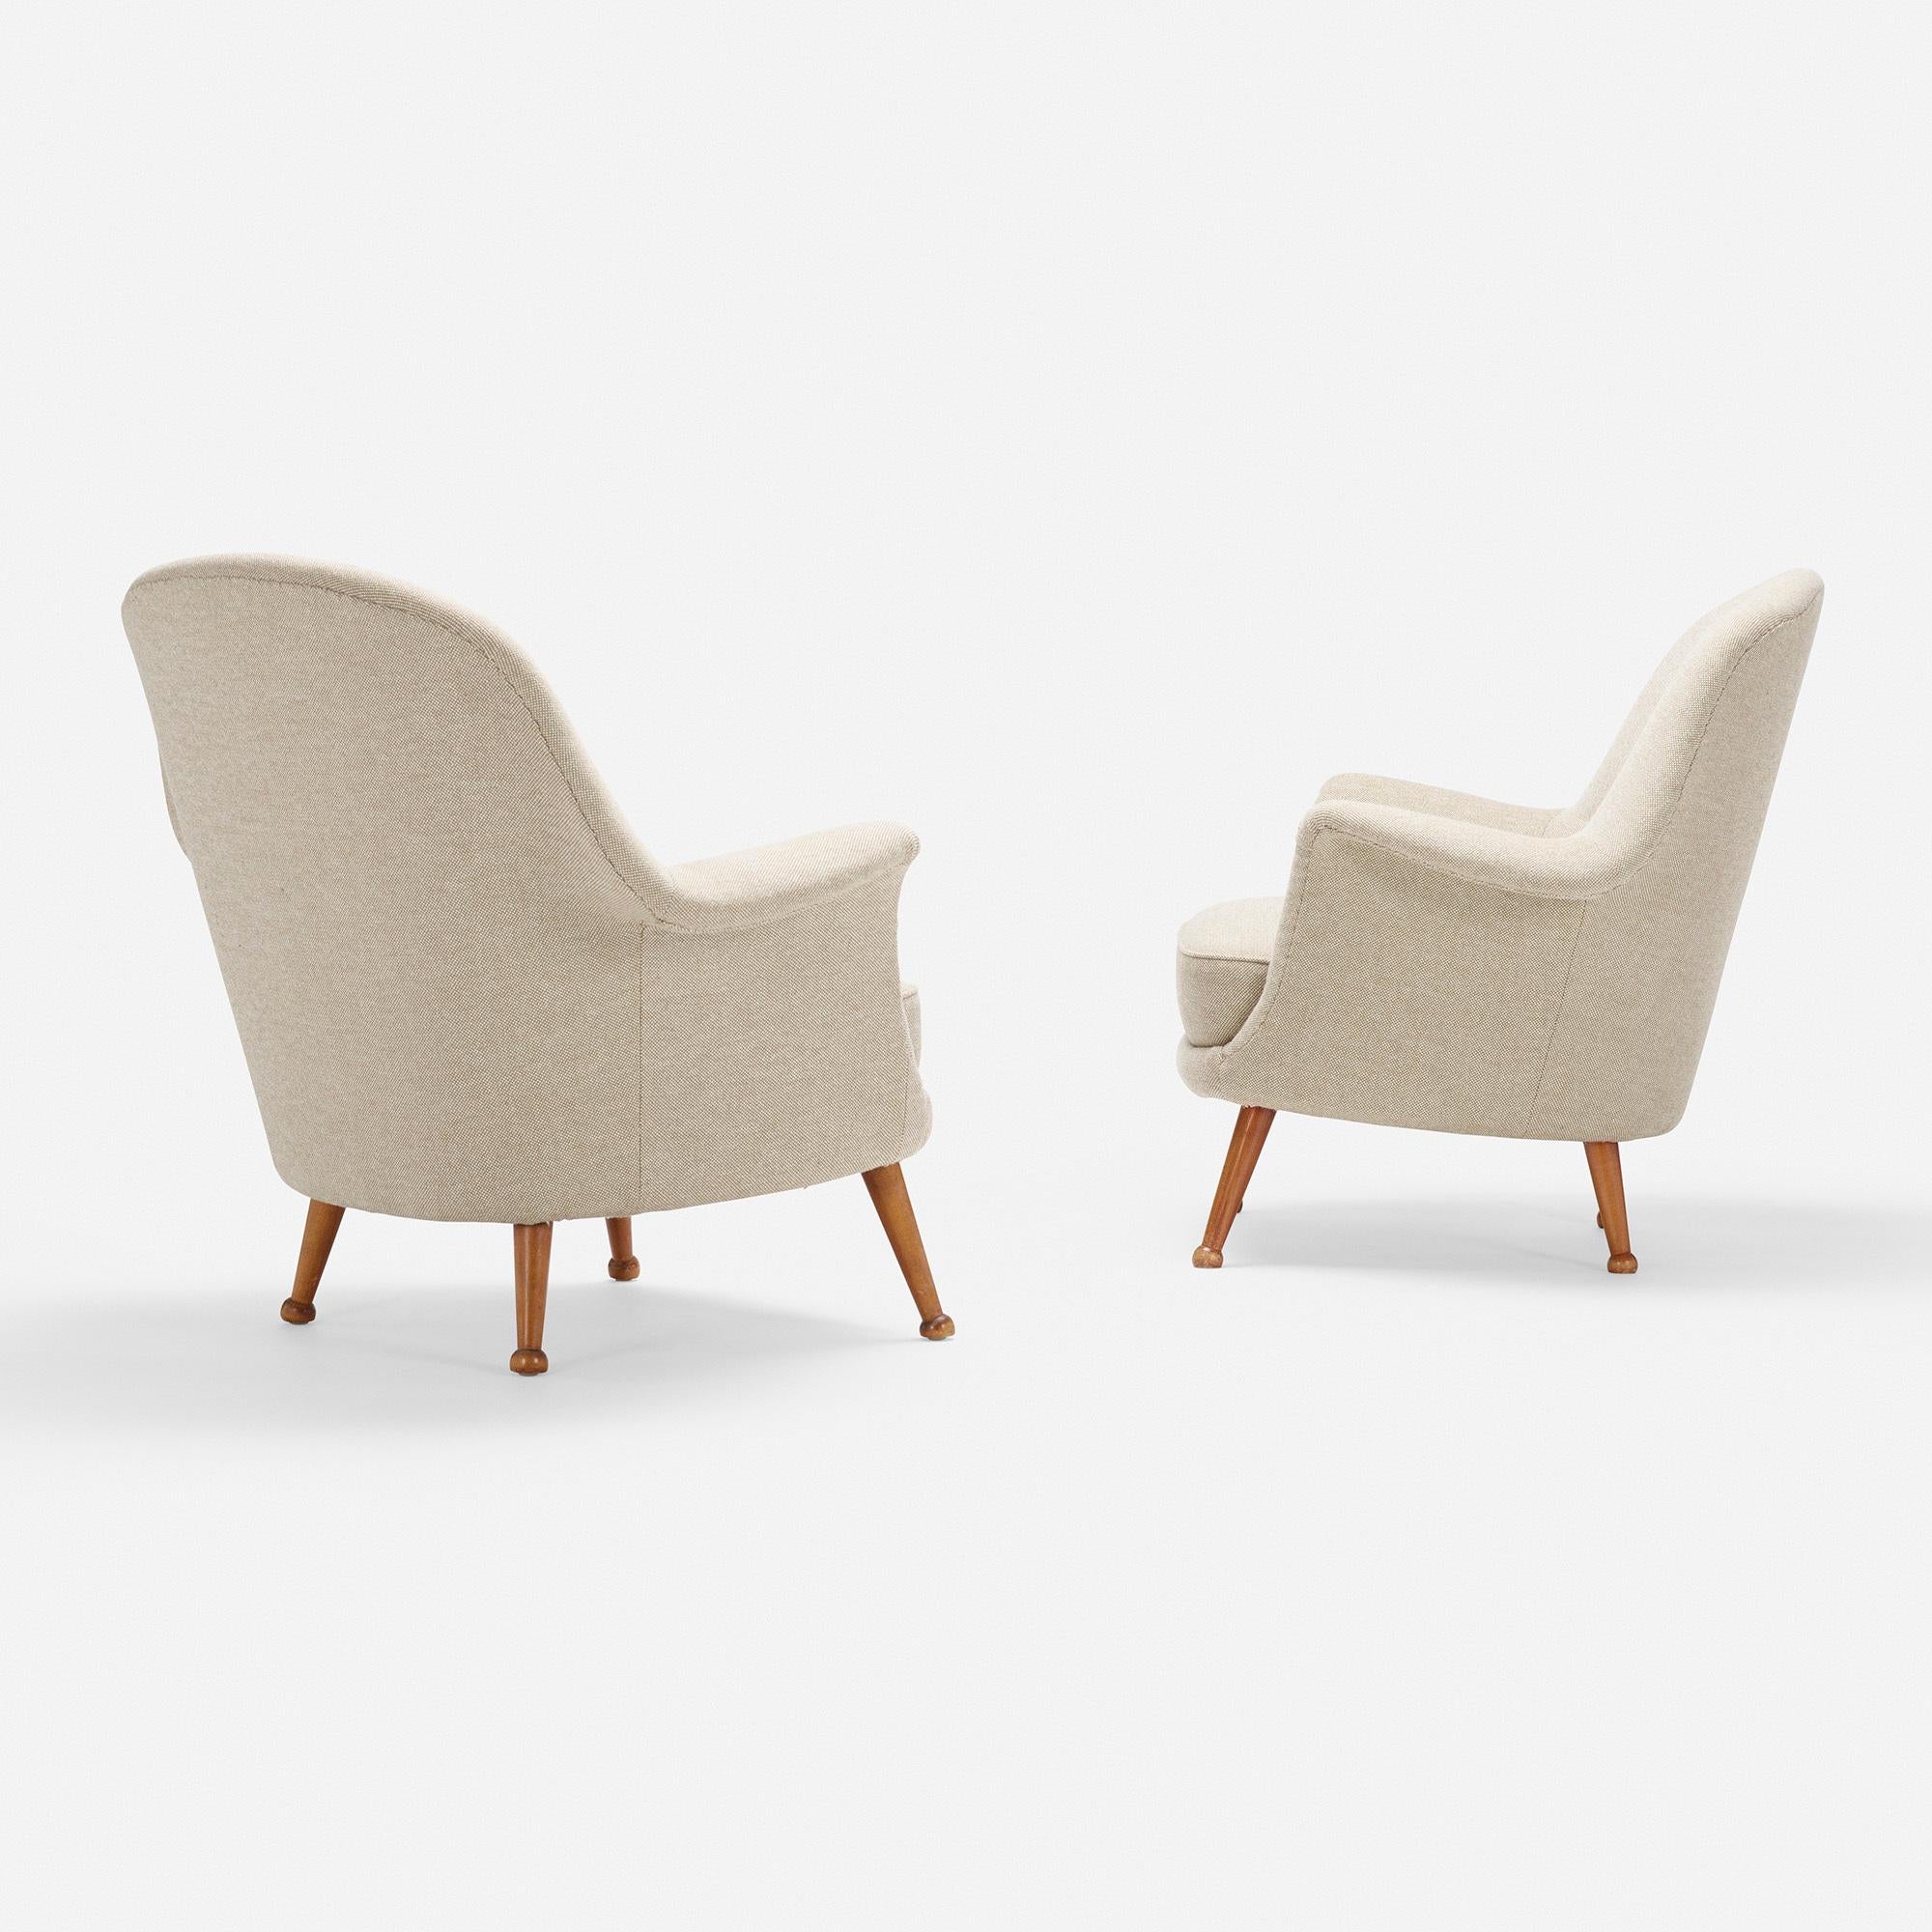 Ein Paar Divina Lounge Chairs von Arne Norell, um 1965

Hergestellt von Norell Möbel, Schweden, ca. 1965

Zusätzliche Informationen:
MATERIAL: Polsterung, Buche
Größe: 36 B × 30,5 T × 33 H Zoll Sitzhöhe: 15,5 Zoll

Zustand: Insgesamt sehr guter